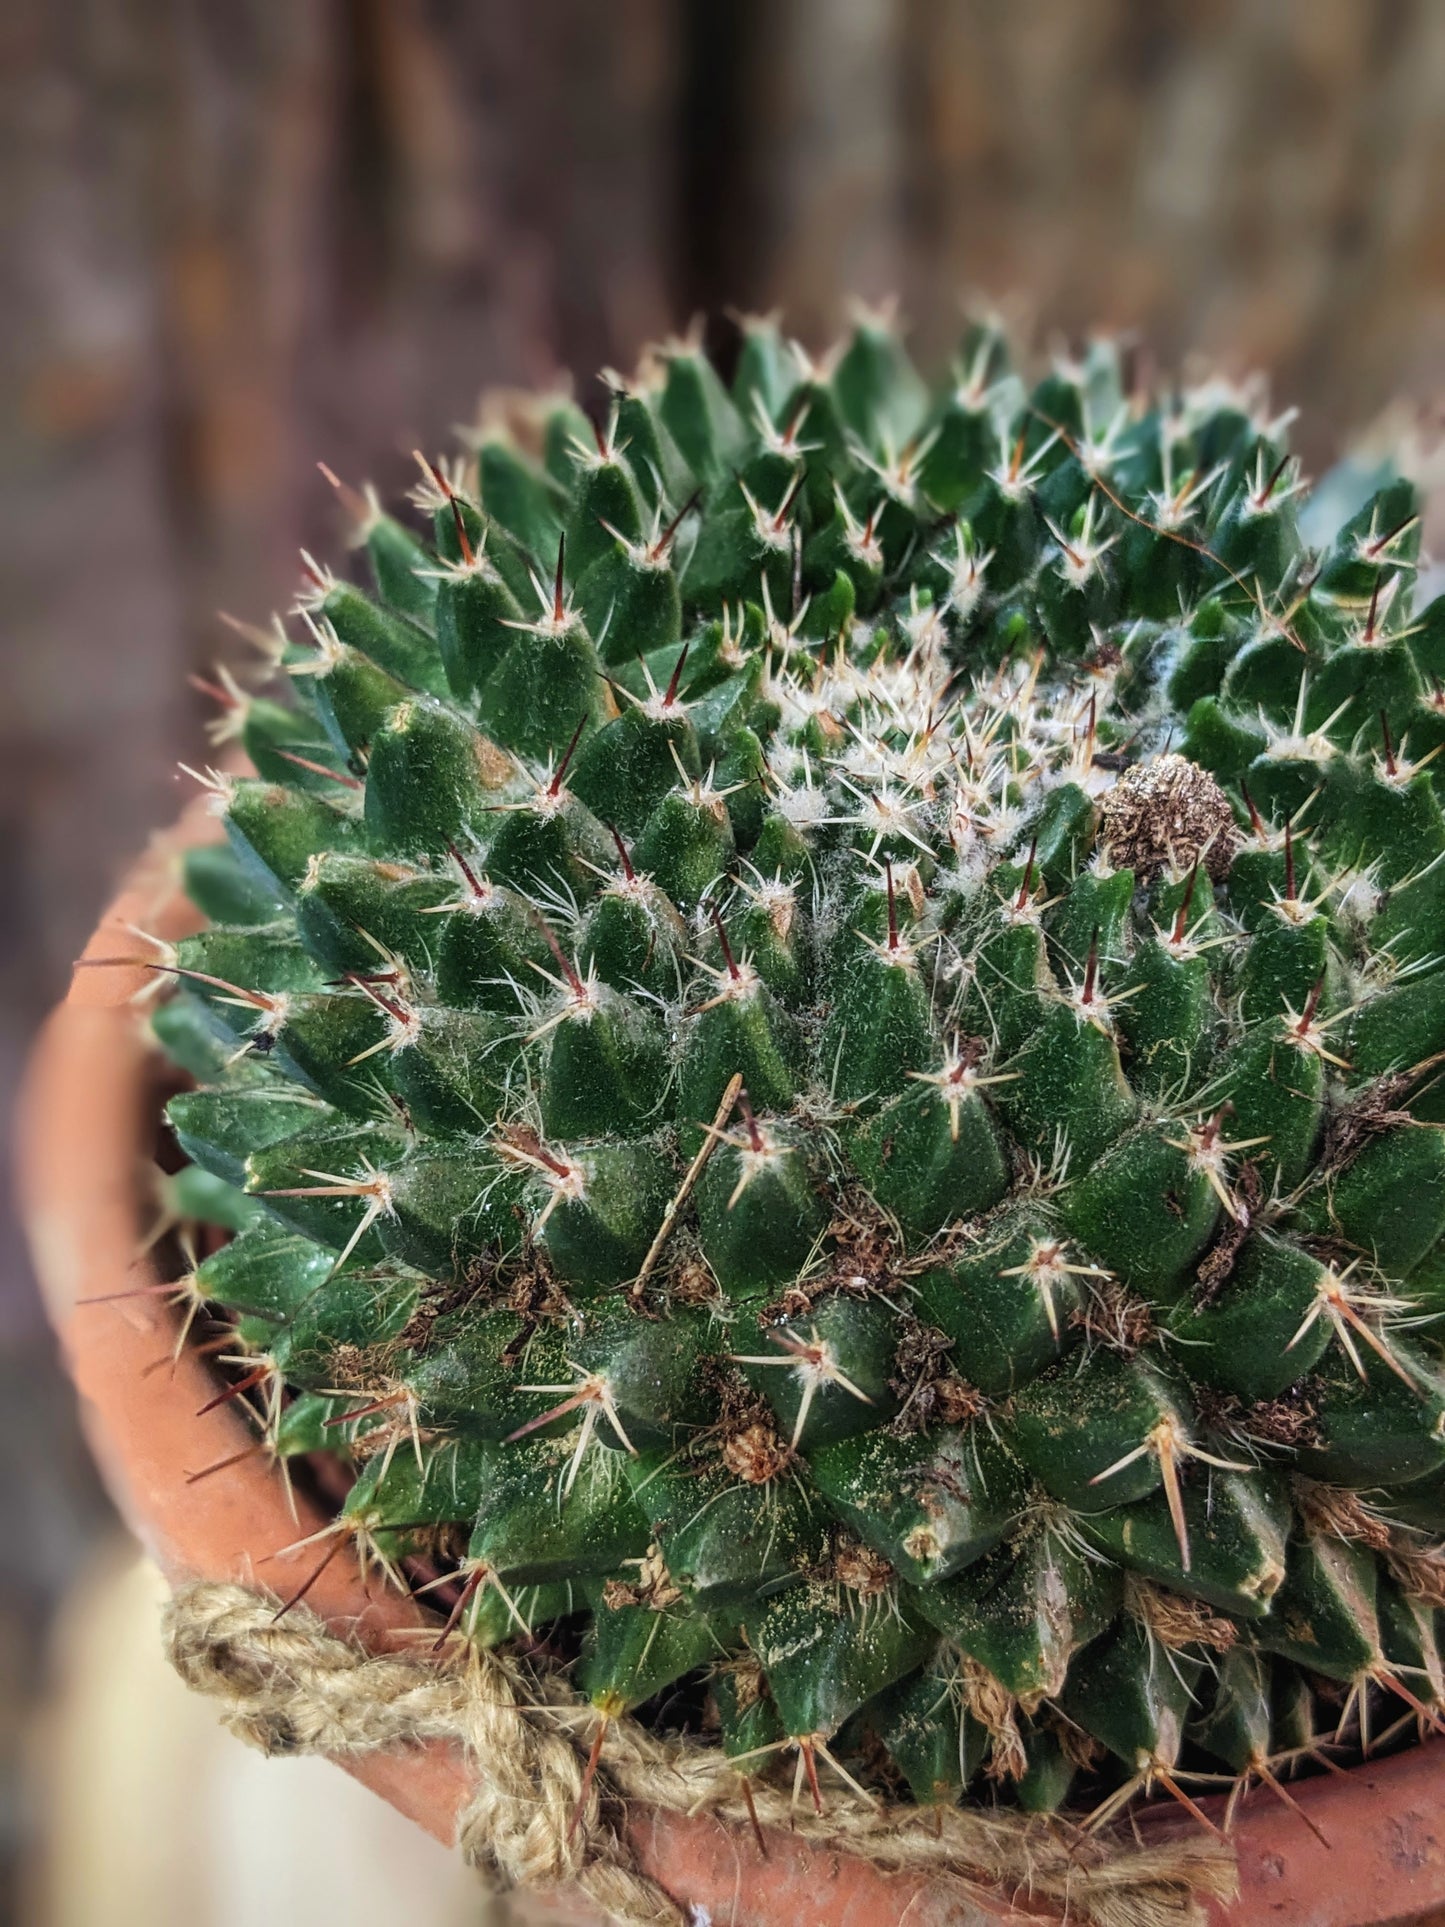 Prickly (Cactus)